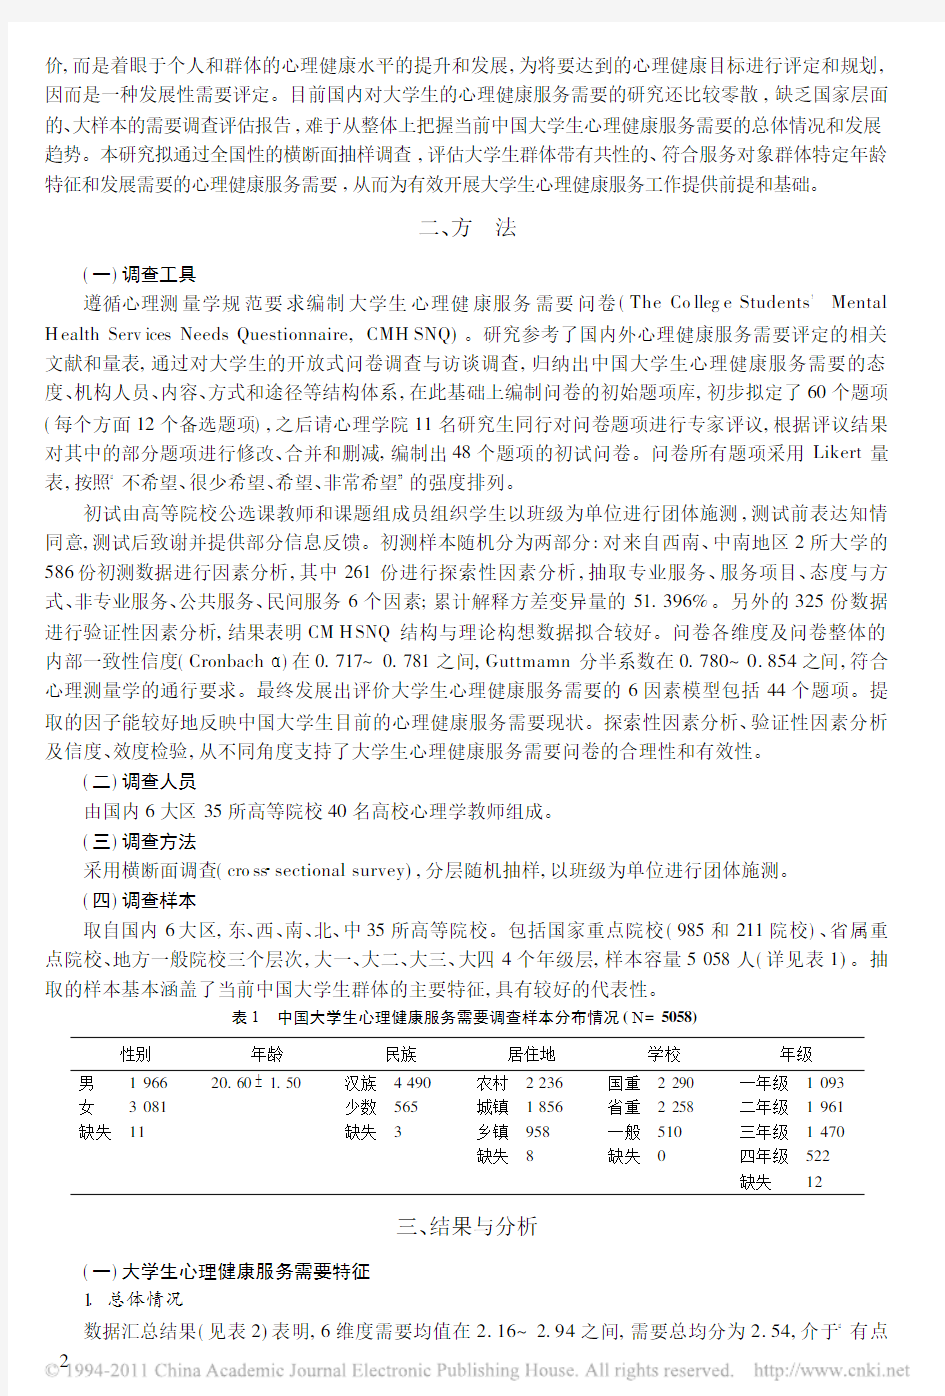 中国大学生心理健康服务需要调查与评估_黄希庭